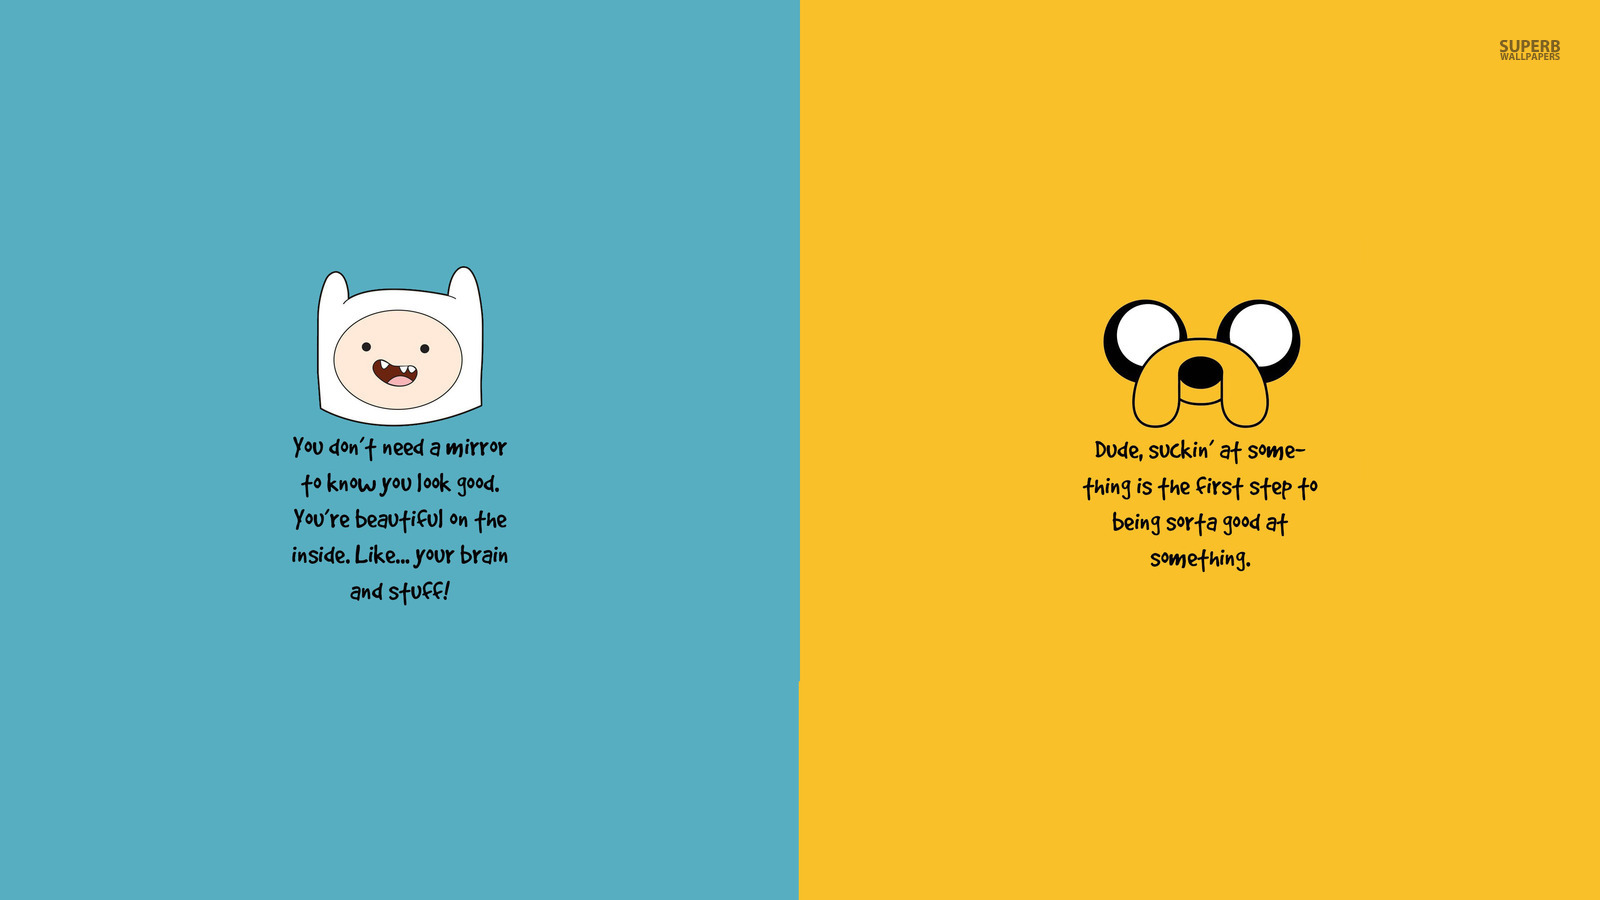 Adventure Time - Cartoon Network Wallpaper 38672283 - Fanpop